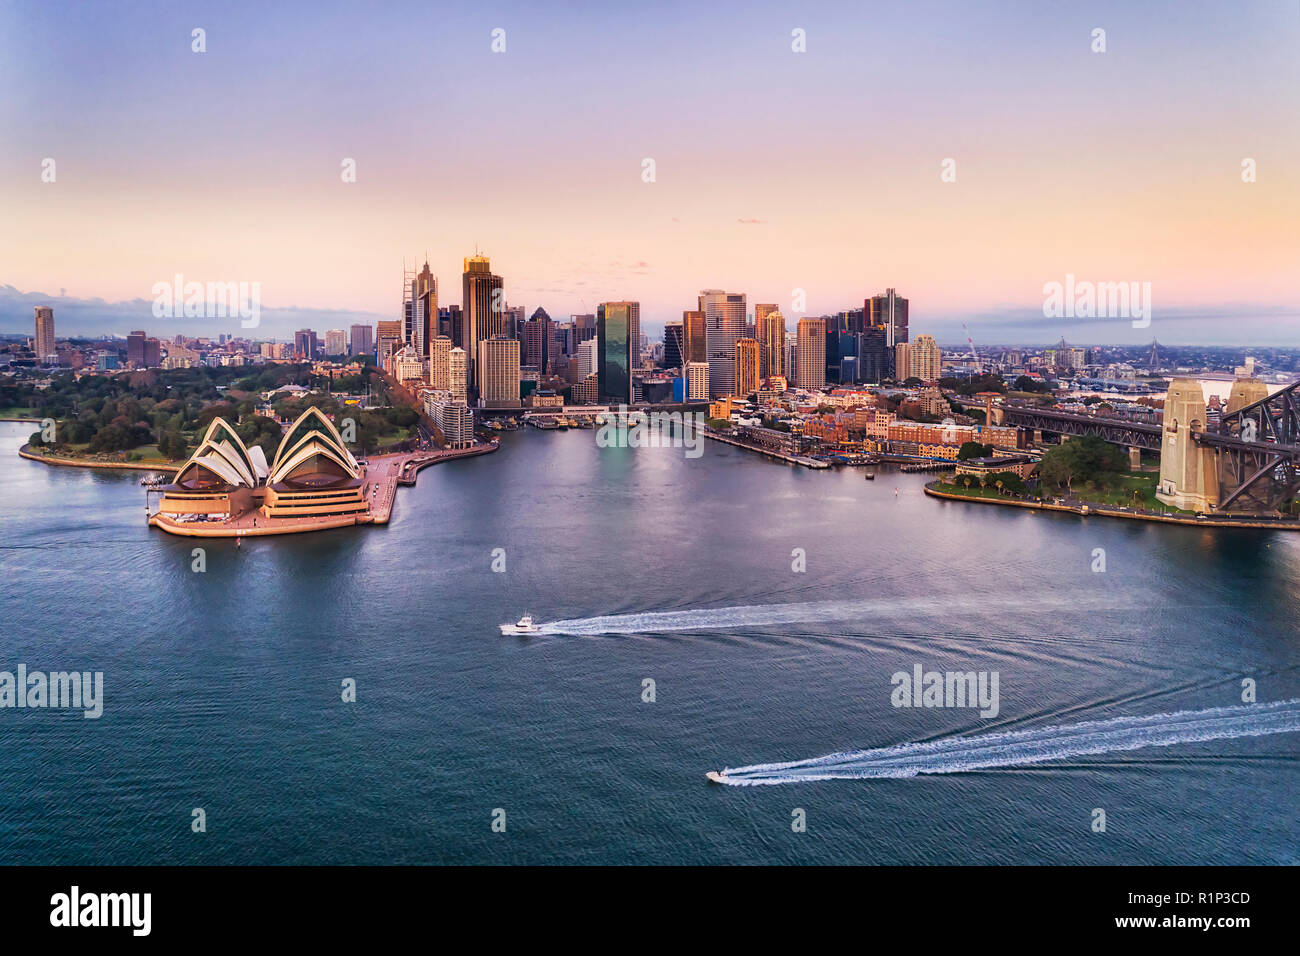 Zwei schnelle Boote auf dem ruhigen Wasser des Hafens von Sydney mit Blick auf den Circular Quay und Innenstadt hoch aufragenden Türmen und australischen Wahrzeichen bei Sonnenaufgang mit Rosa Stockfoto